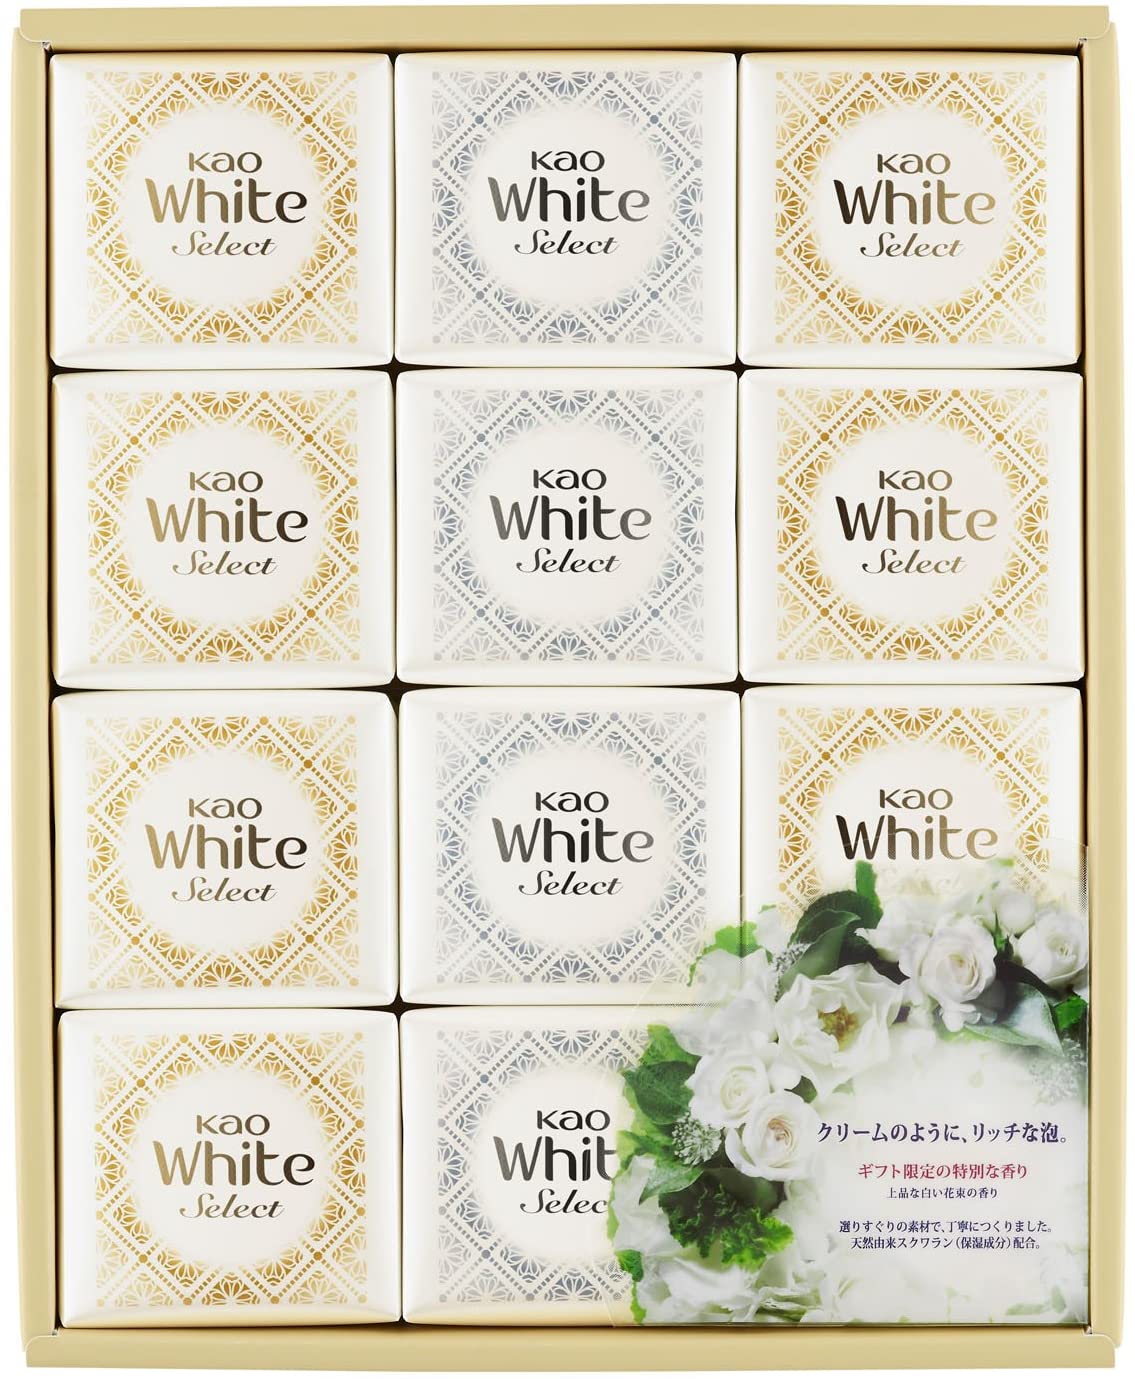 花王ホワイト セレクト 上品な白い花束の香り 85g 12コ KWS-20